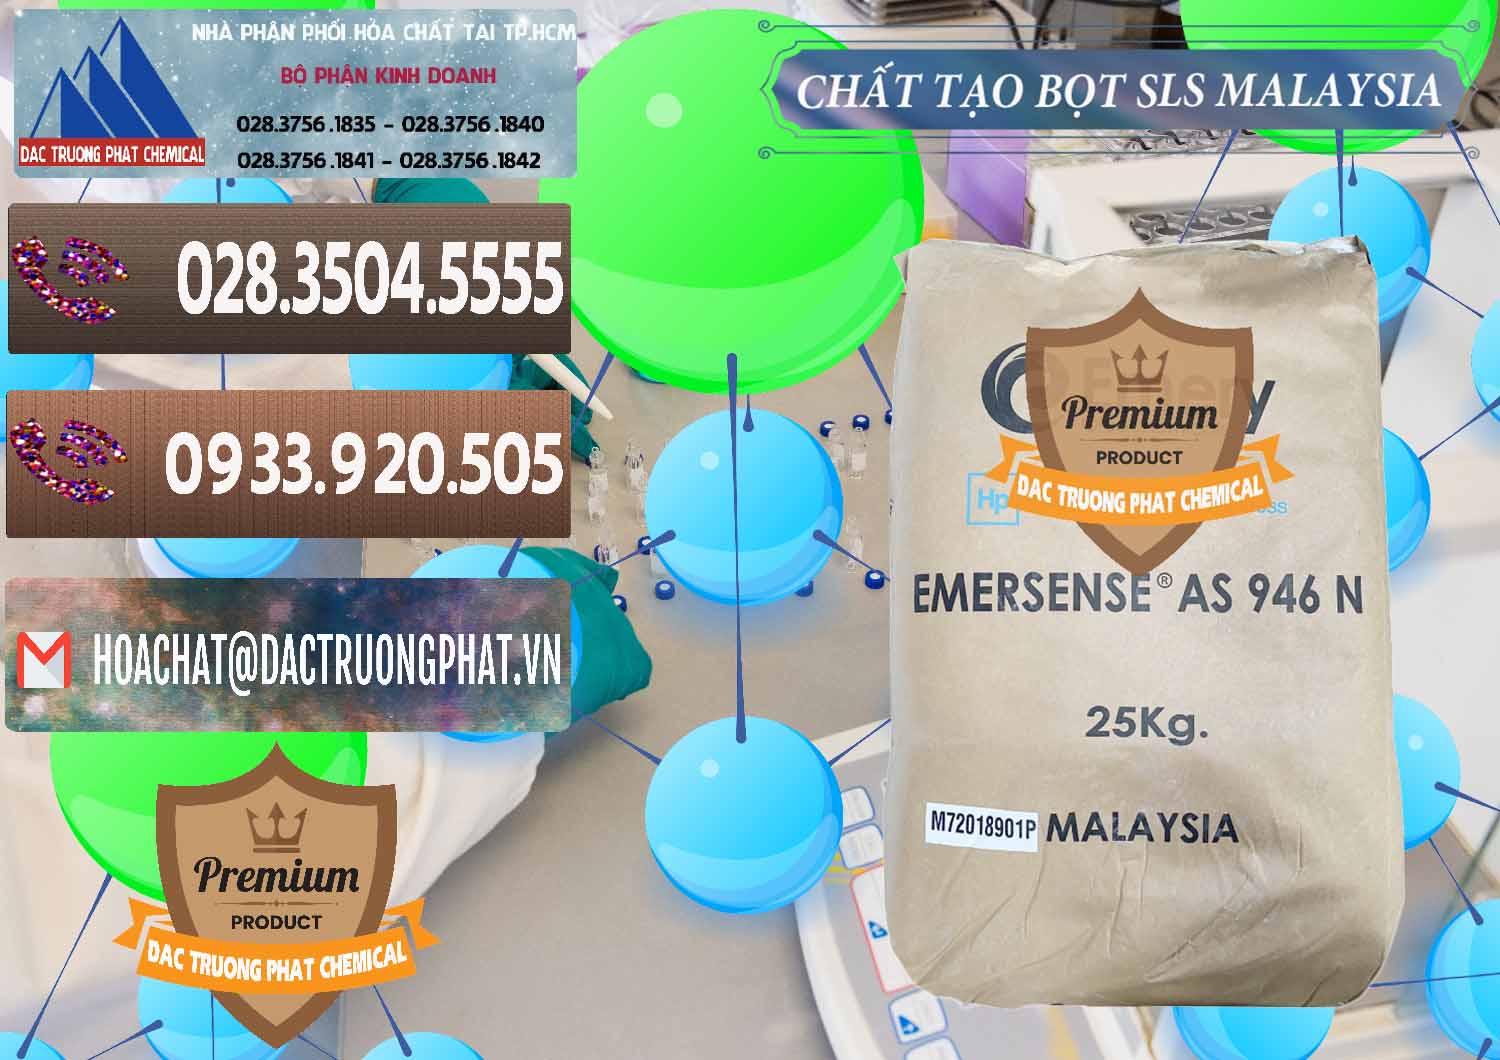 Cty chuyên bán - phân phối Chất Tạo Bọt SLS Emery - Emersense AS 946N Mã Lai Malaysia - 0423 - Đơn vị cung ứng & phân phối hóa chất tại TP.HCM - hoachatviet.net